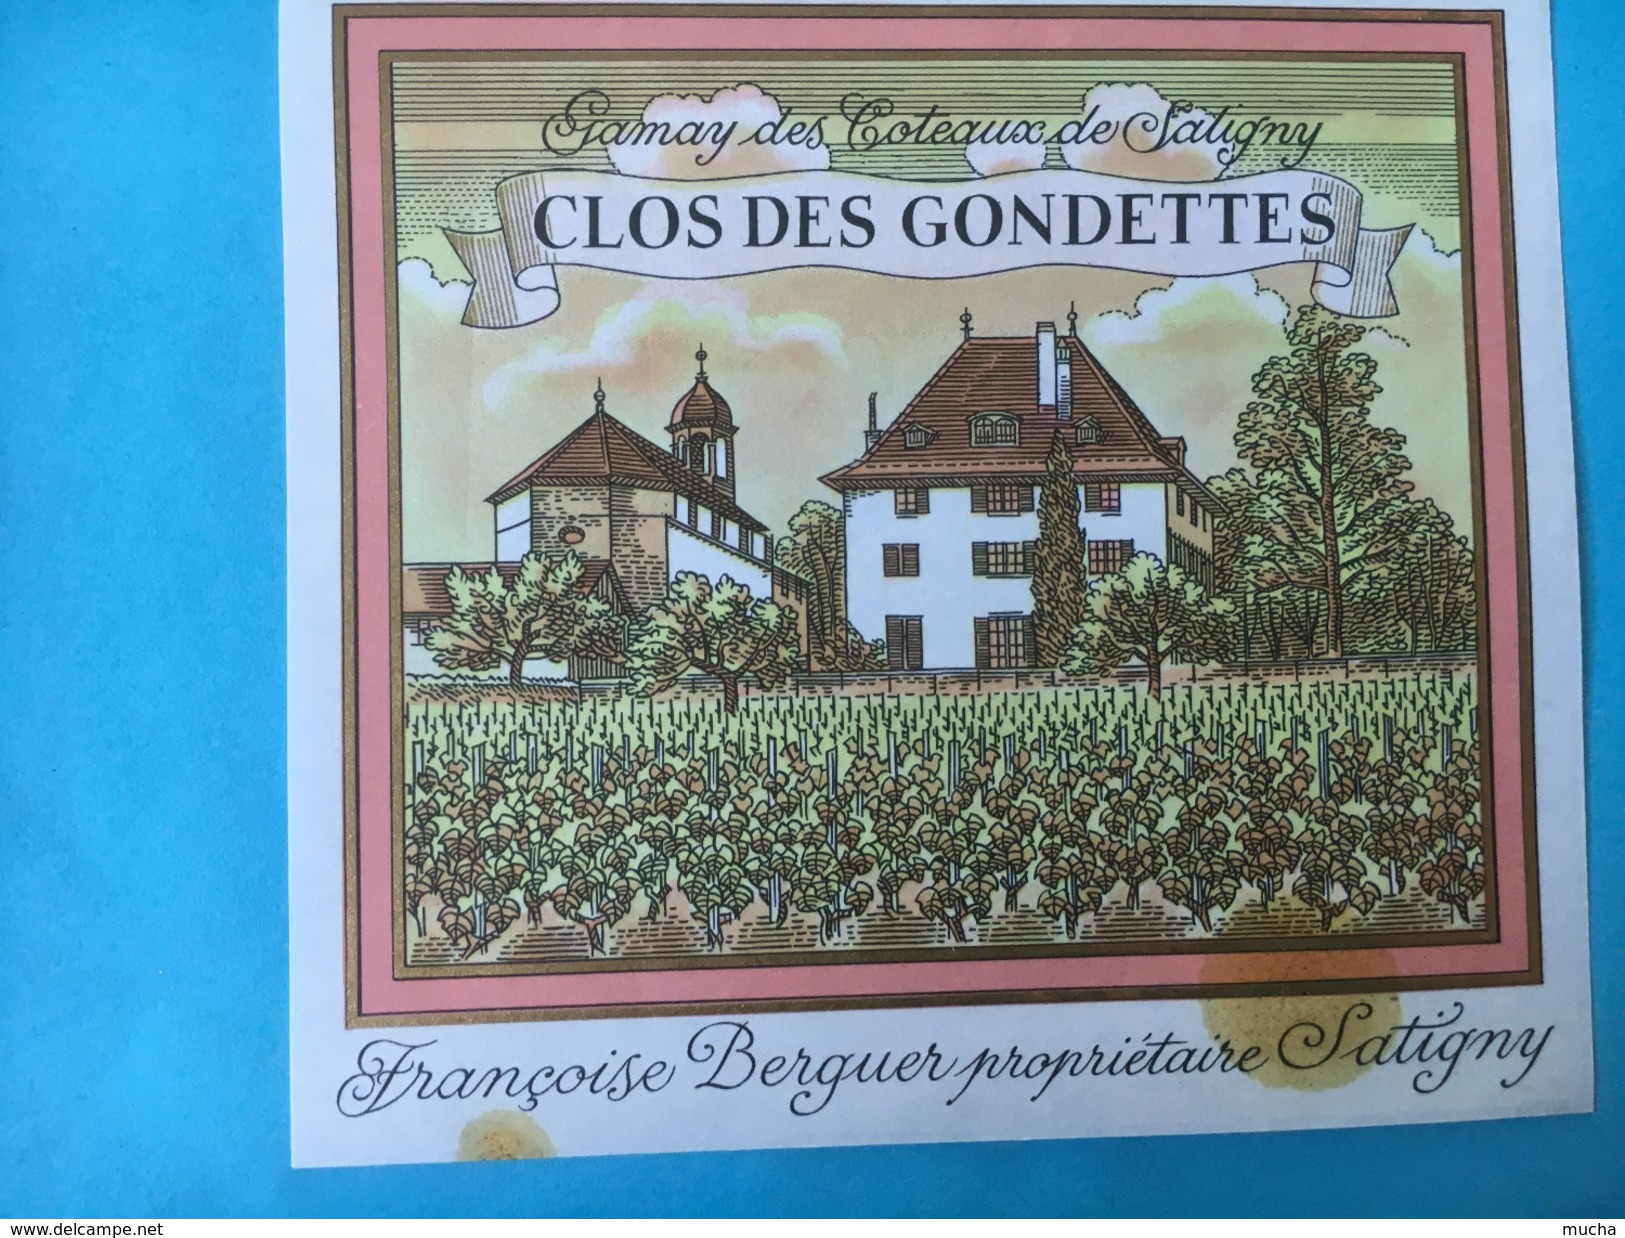 1719 - Suisse Genève Gamay Des Coteaux De Satigny Clos Des Gondettes - Fondue